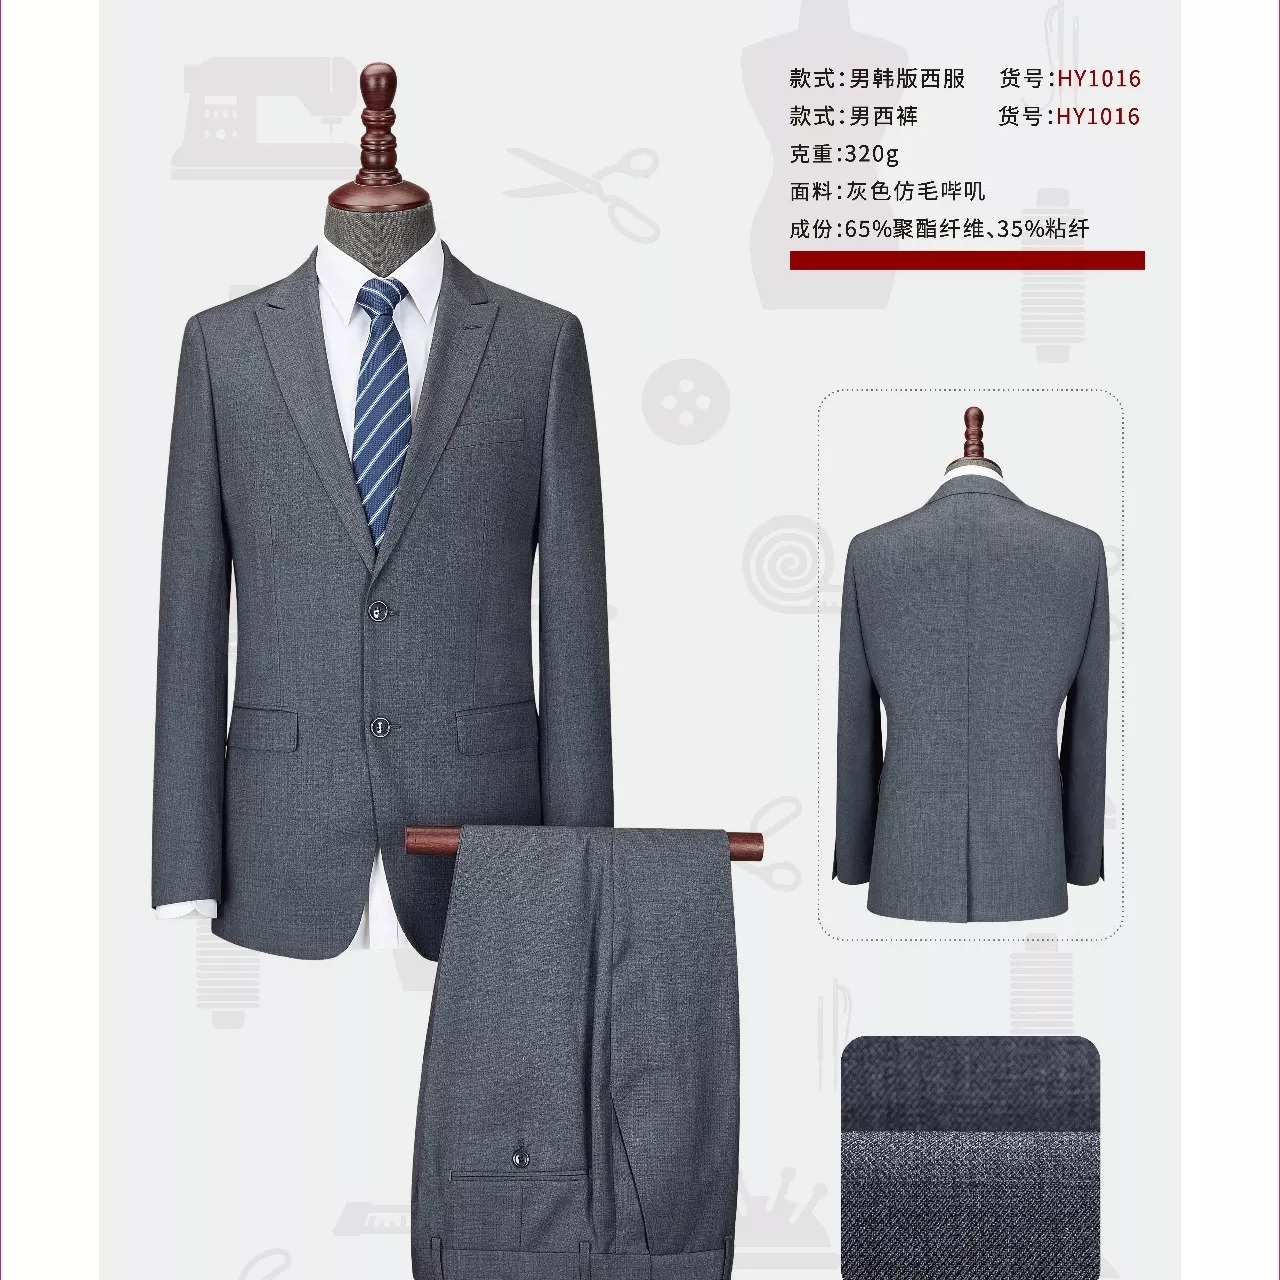 西安职业西装动做 时尚设计 款式新颖 男式西服套装